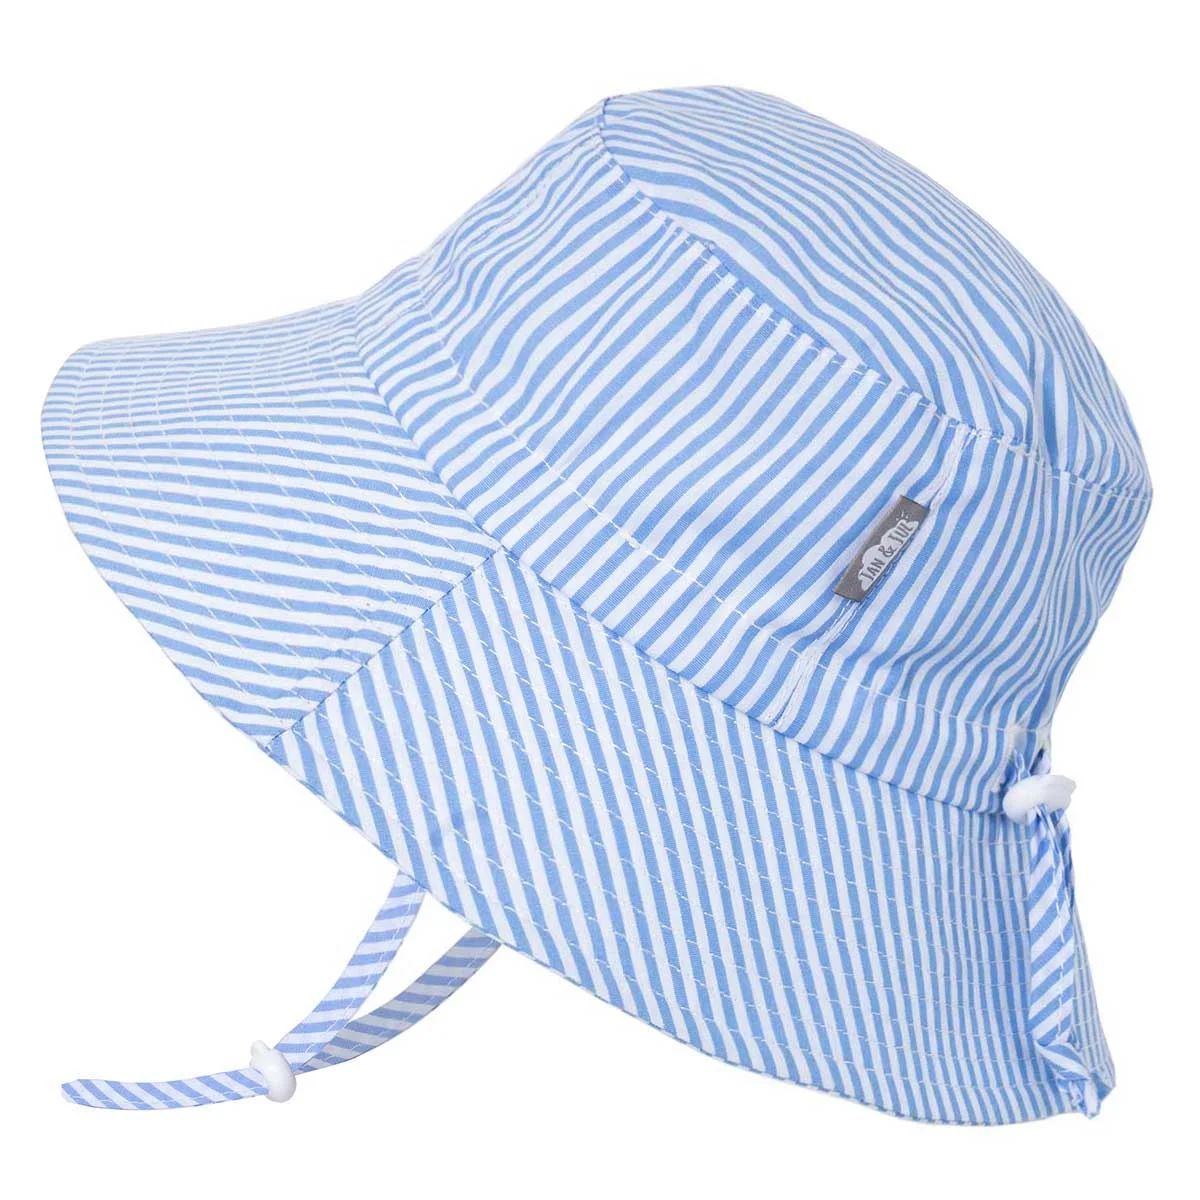 Jan & Jul Infant Sun-Hat for Girls Boys, Stay-on Adjustable Strap (S: 0-6 months, Blue Stripes) | Walmart (US)